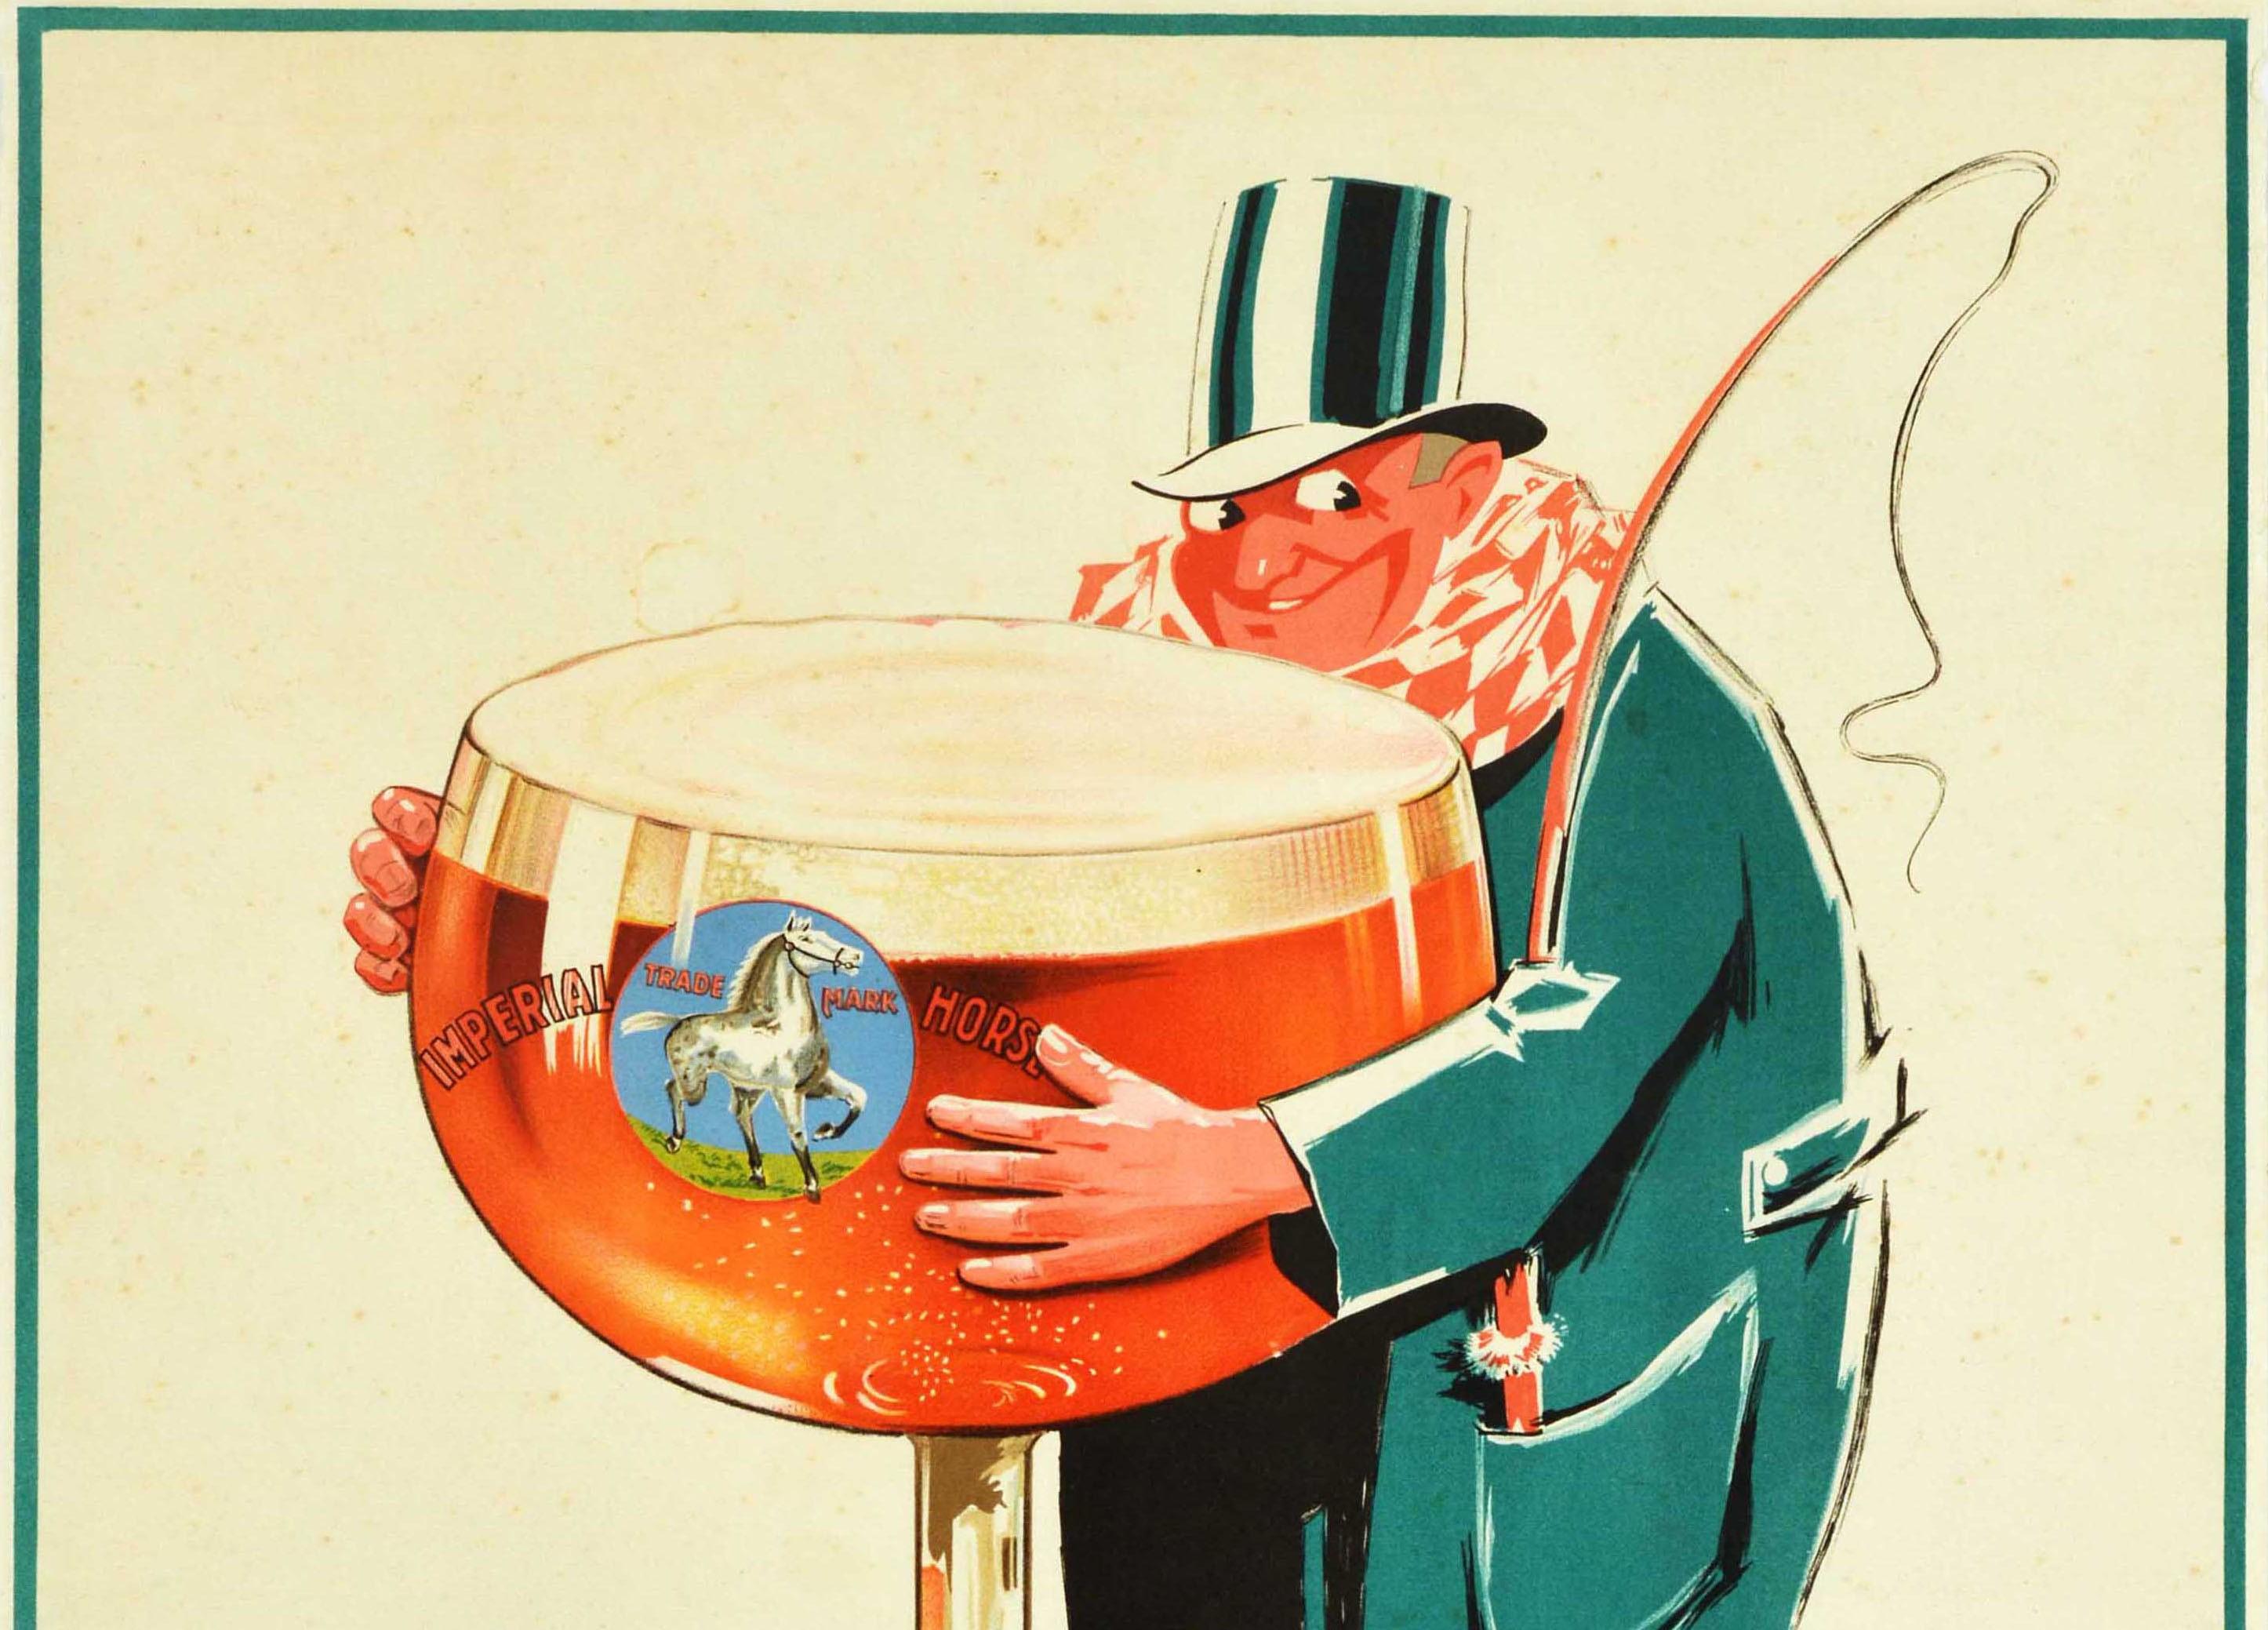 Affiche originale d'époque pour une boisson à base de bière, annonçant la Horse Ale Imperial, comportant une illustration amusante d'un cocher souriant vêtu d'un long manteau vert et d'un chapeau haut de forme, avec un fouet dans sa poche, tenant un